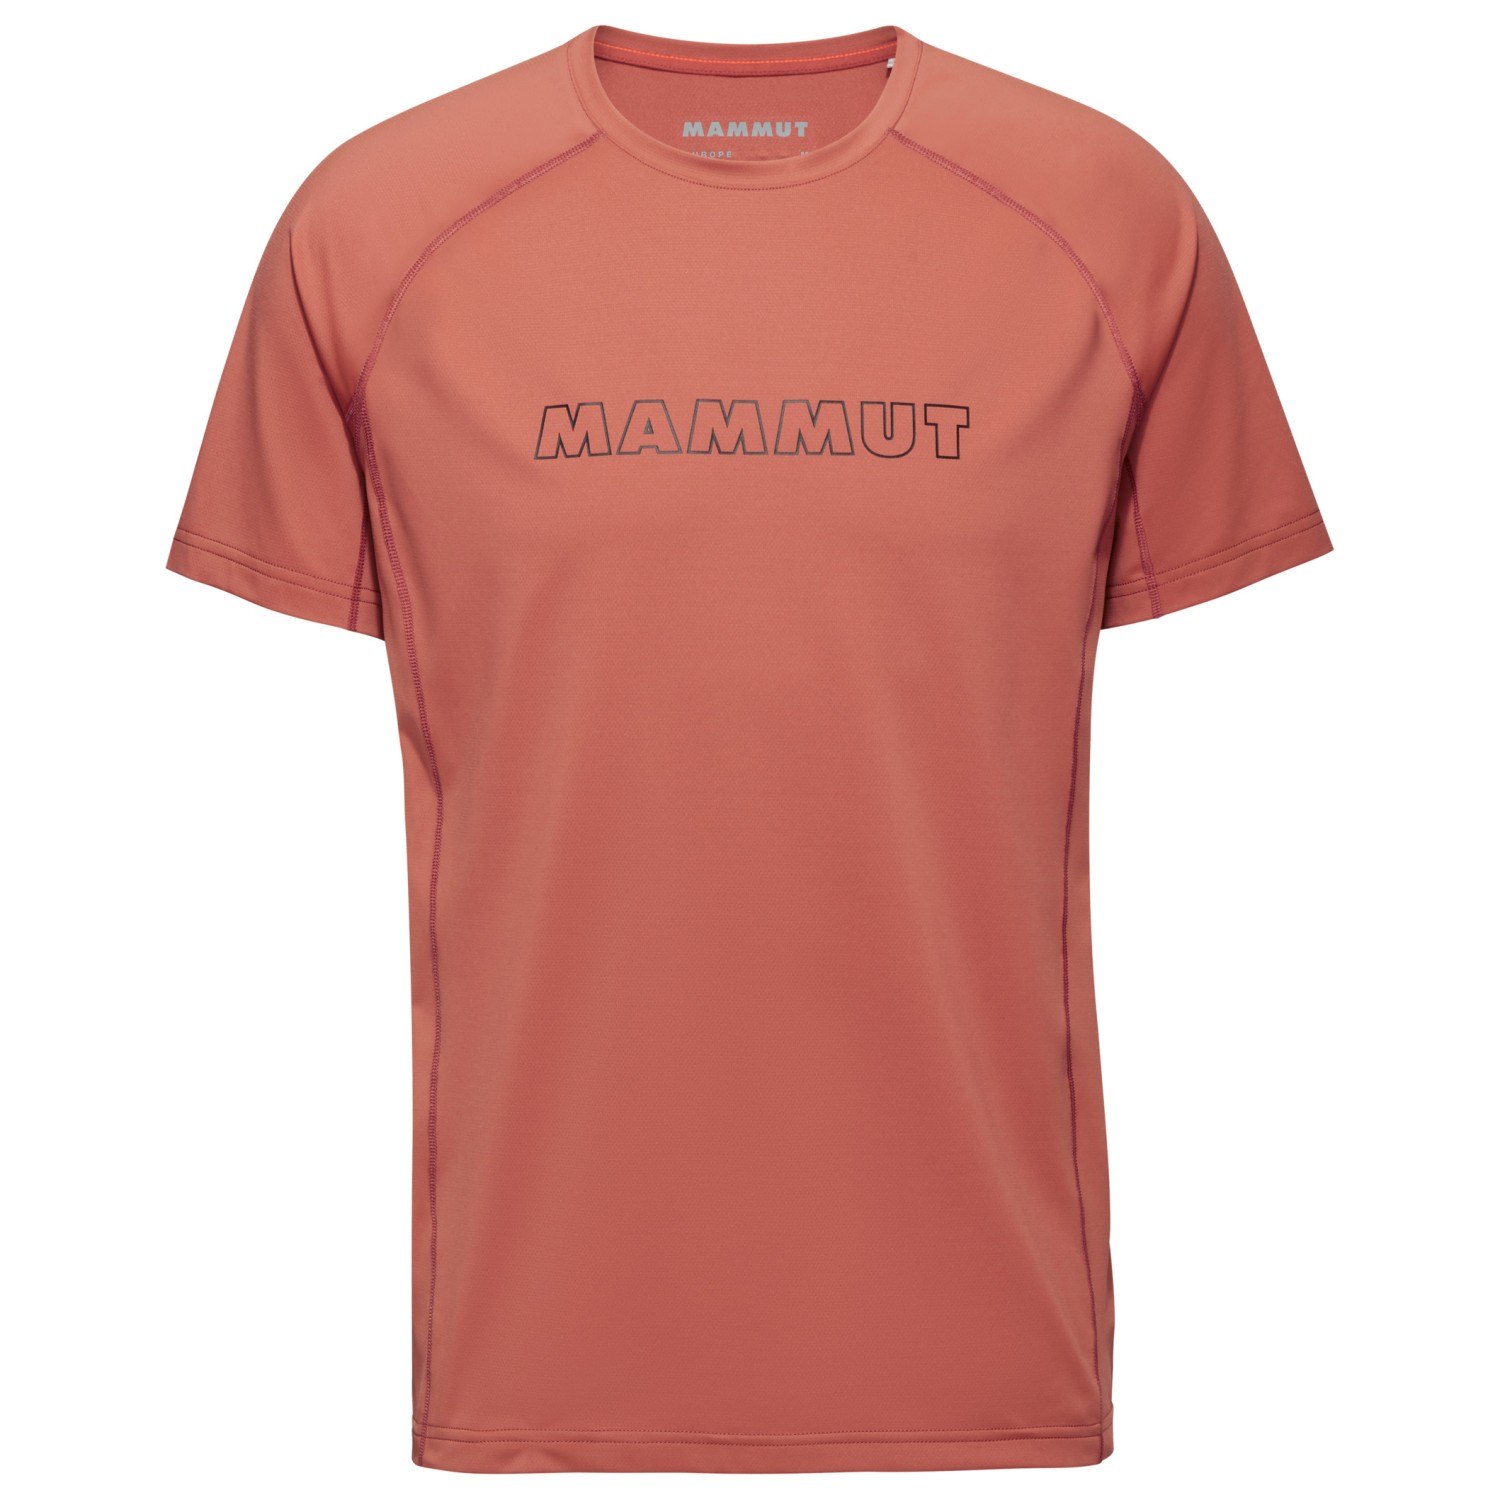 функциональная рубашка mammut aenergy fl t shirt цвет deep ice marine Функциональная рубашка Mammut Selun FL T Shirt Logo, цвет Brick